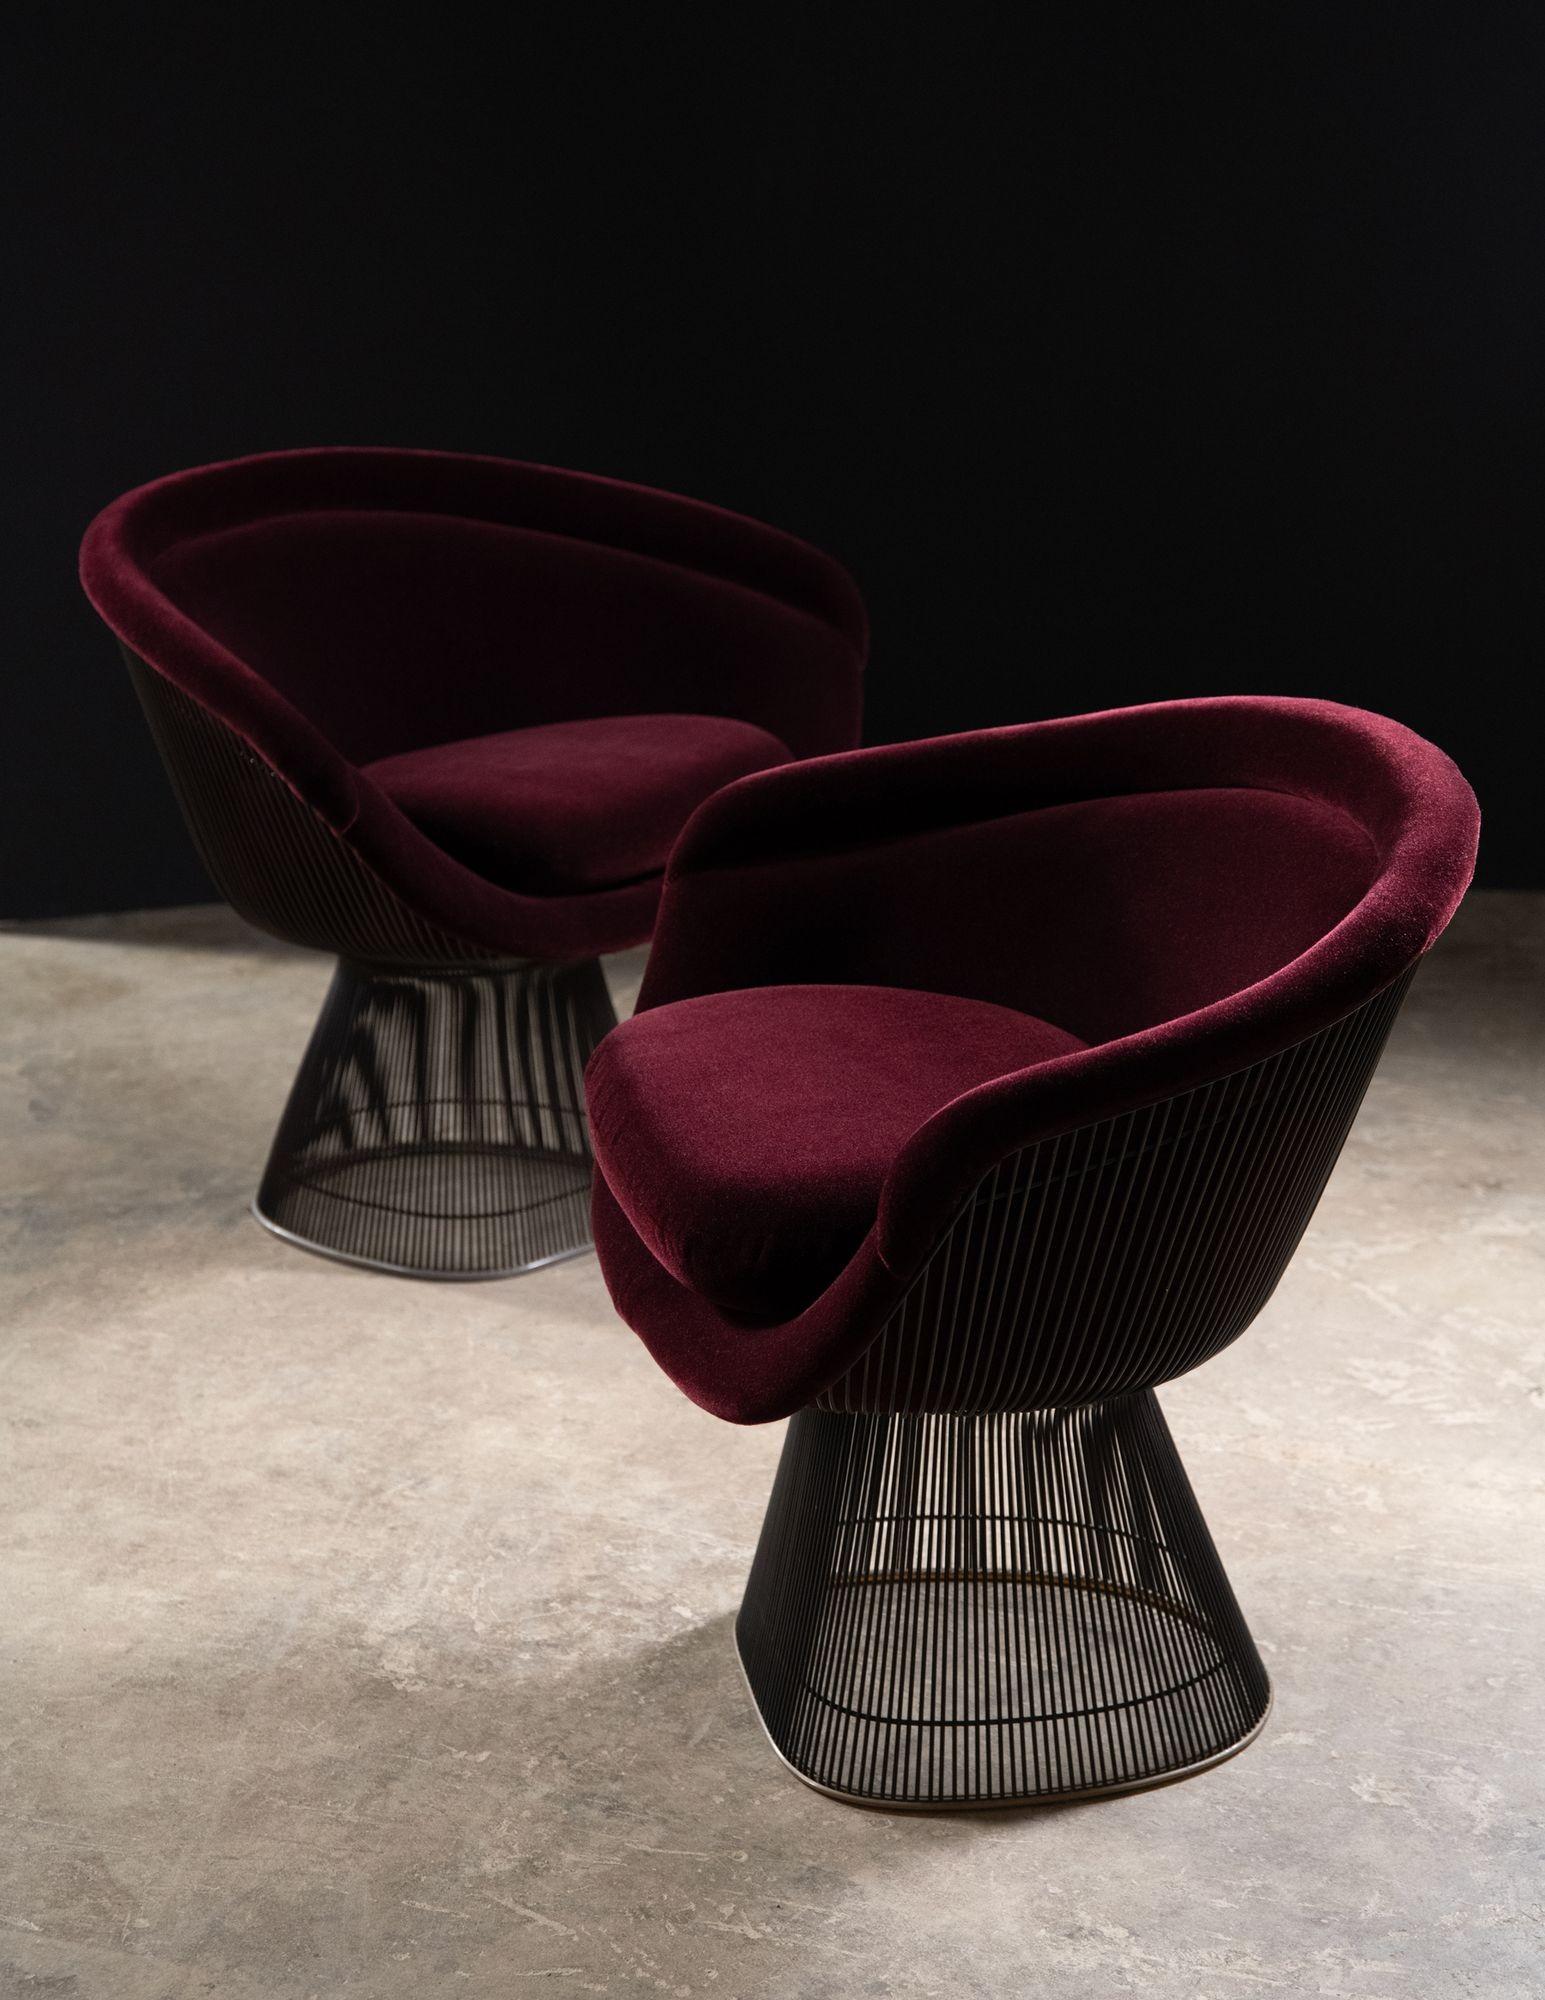 Chaises longues rares, de production précoce, conçues par Warren Platner à partir de la Collection S/One en bronze, 1966 pour Knoll International. Les chaises longues sont en excellent état, avec une nouvelle mousse et un nouveau revêtement en